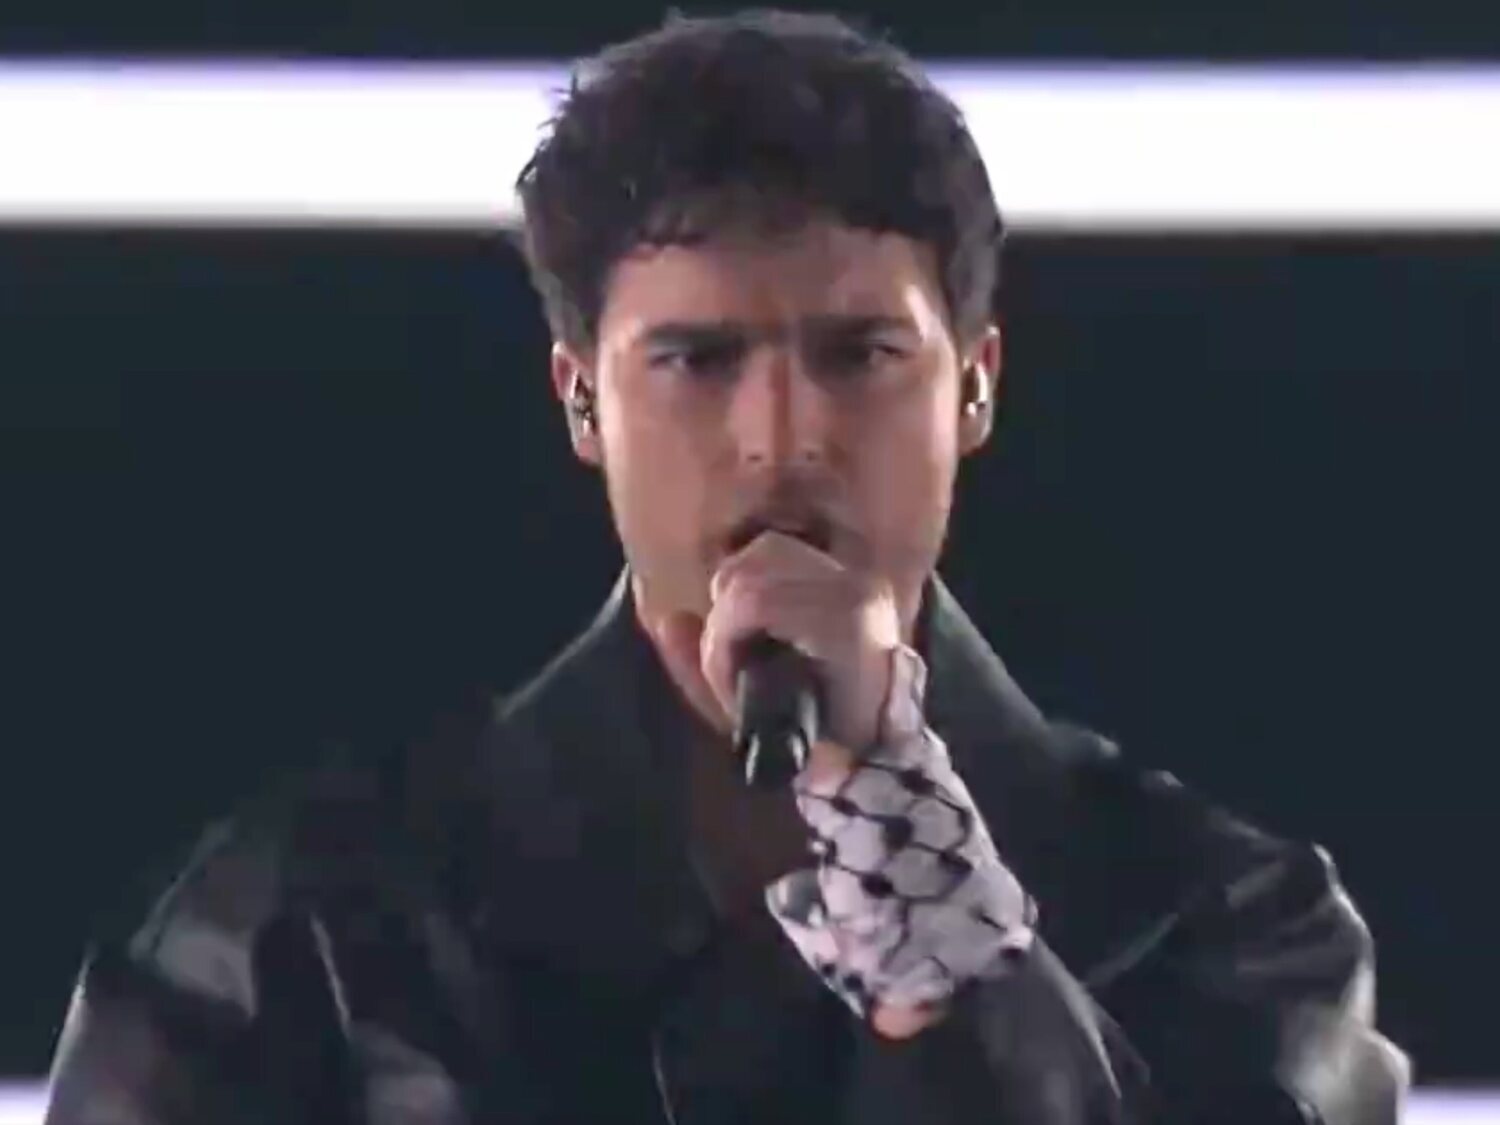 La medida de Eurovisión tras el gesto prohibido de Eric Saade en apoyo a Palestina